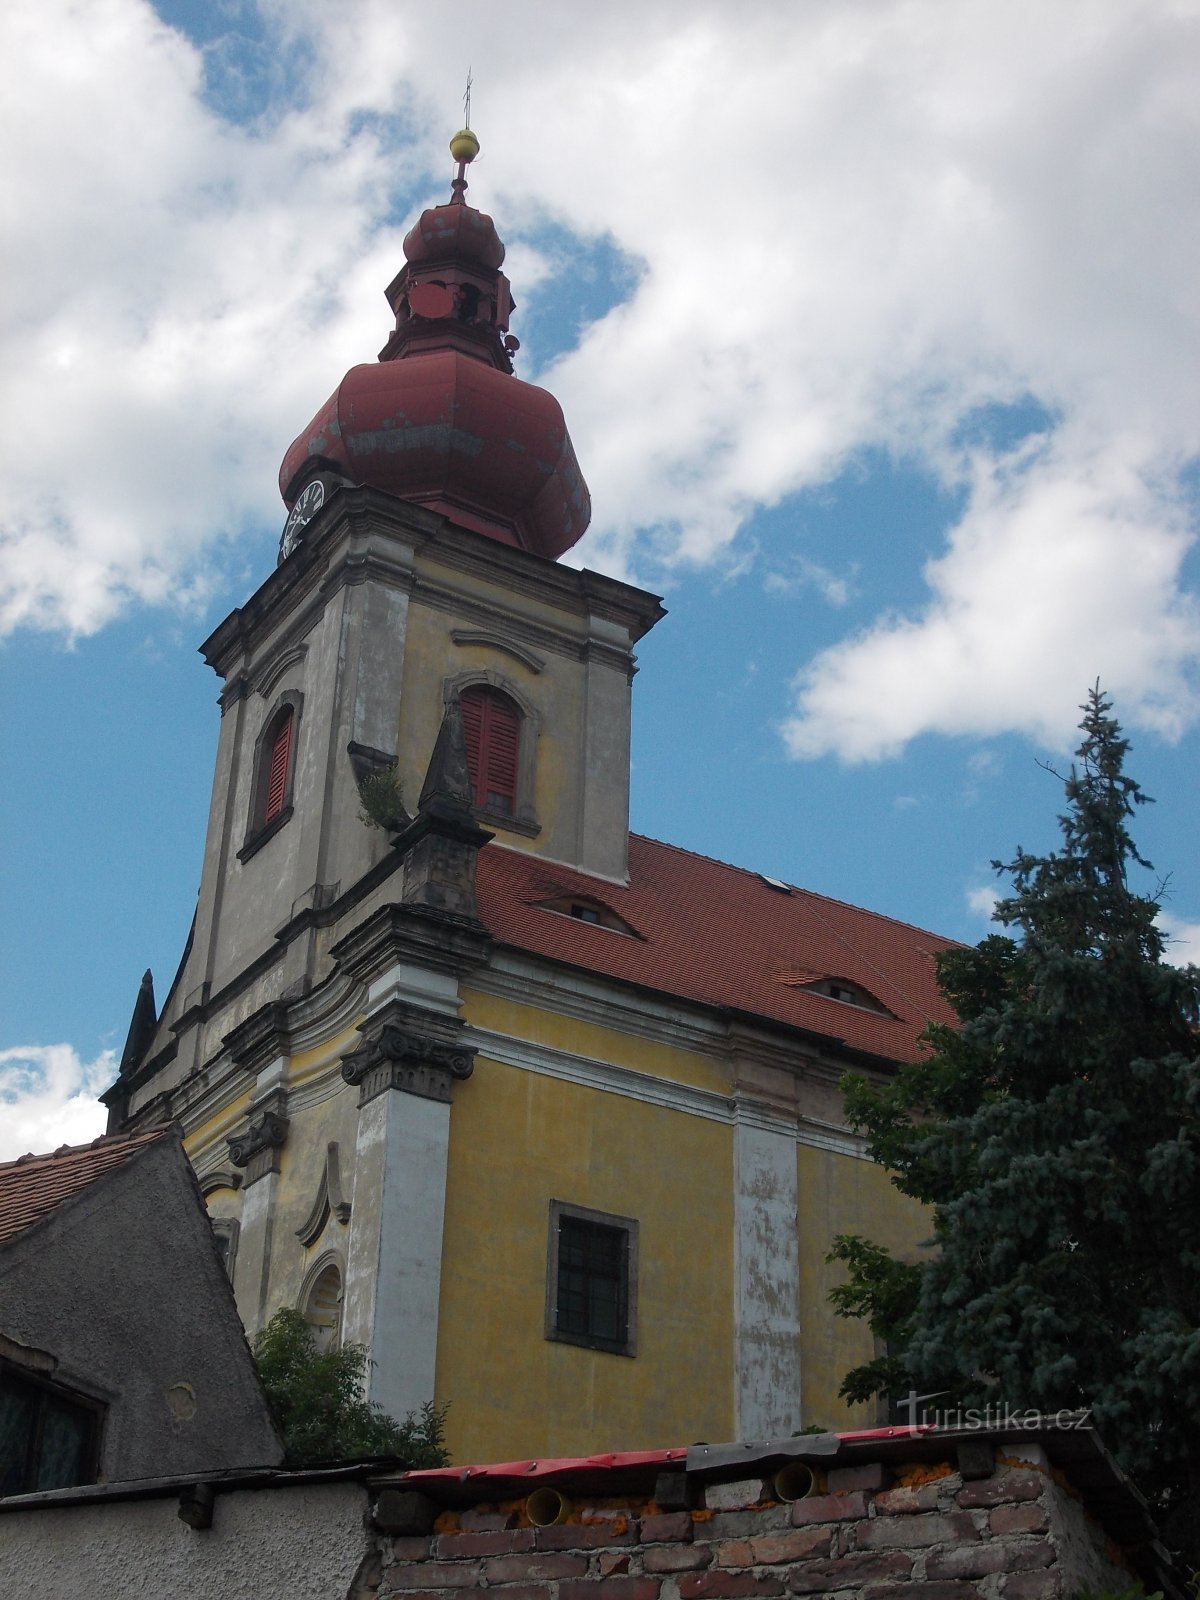 une église avec une tour prismatique intégrée, surmontée d'une tour en forme d'oignon